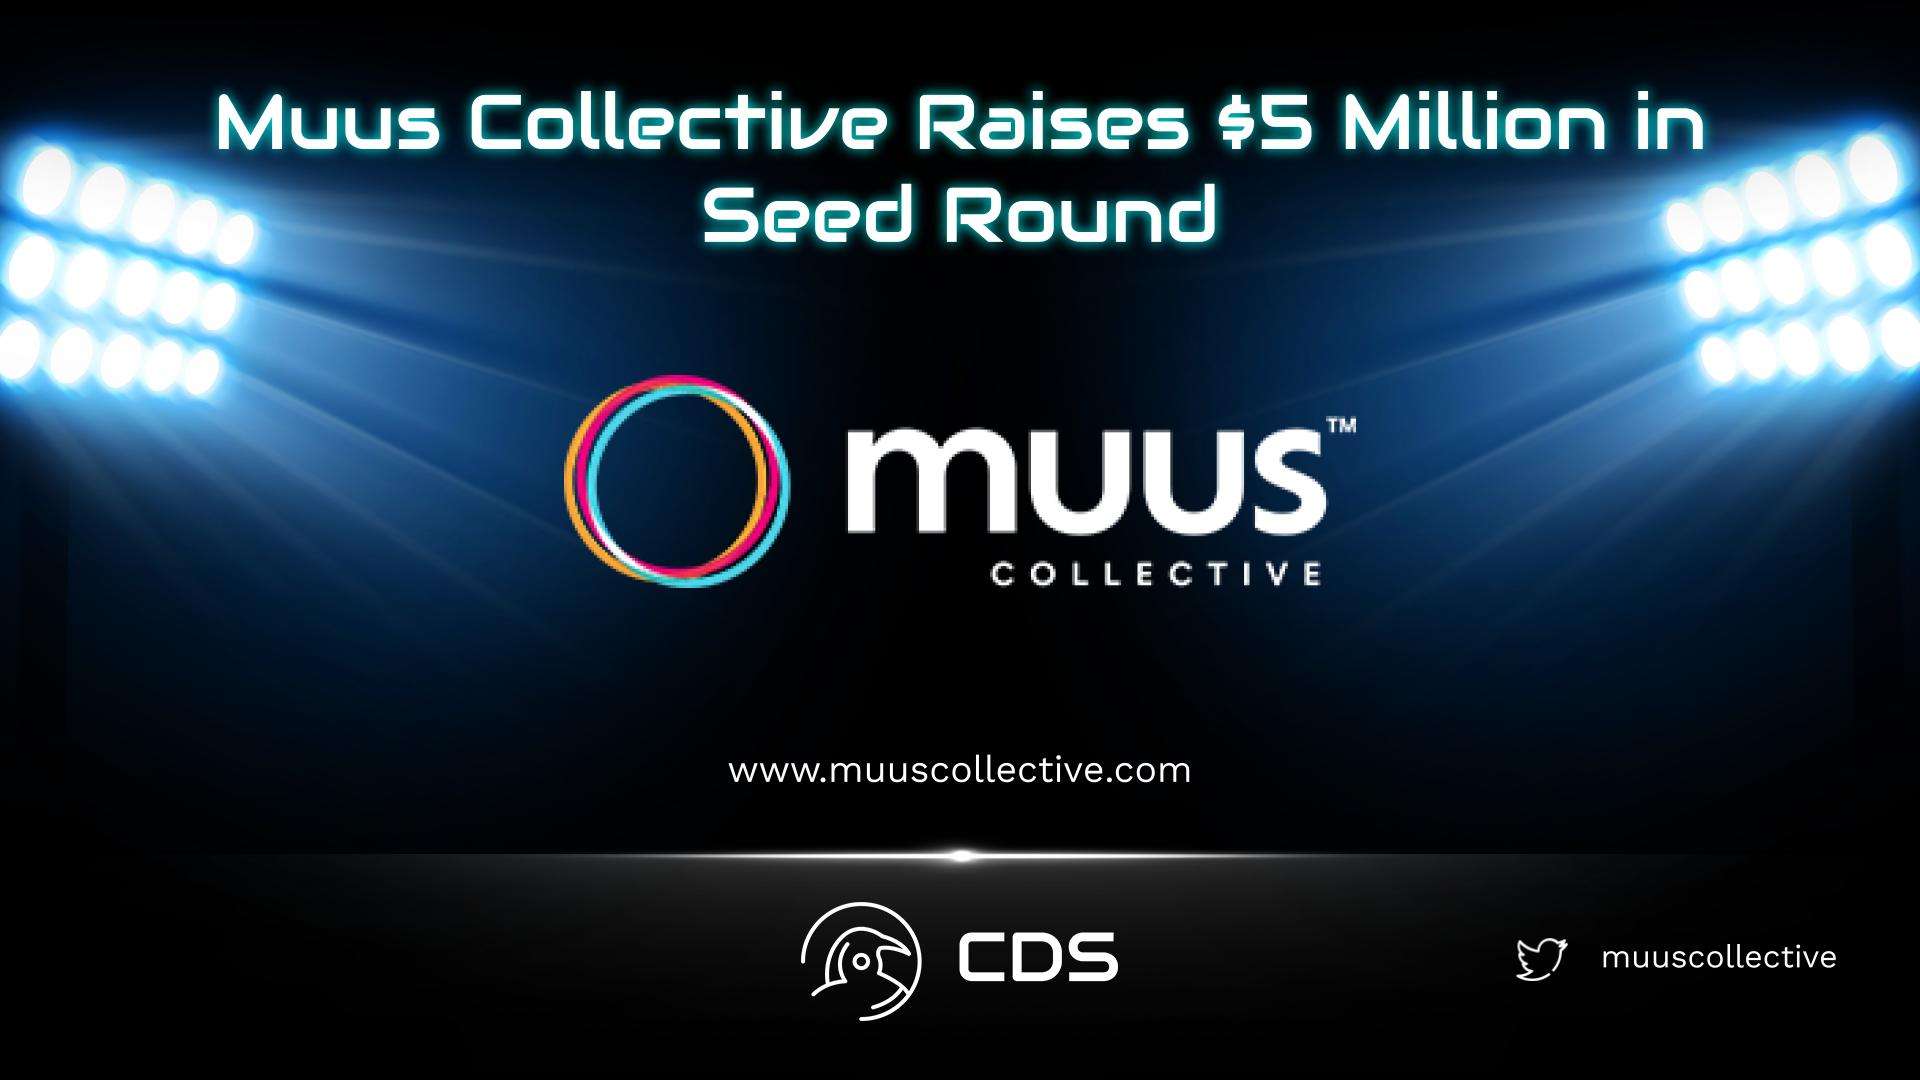 Muus Collective Raises $5 Million in Seed Round